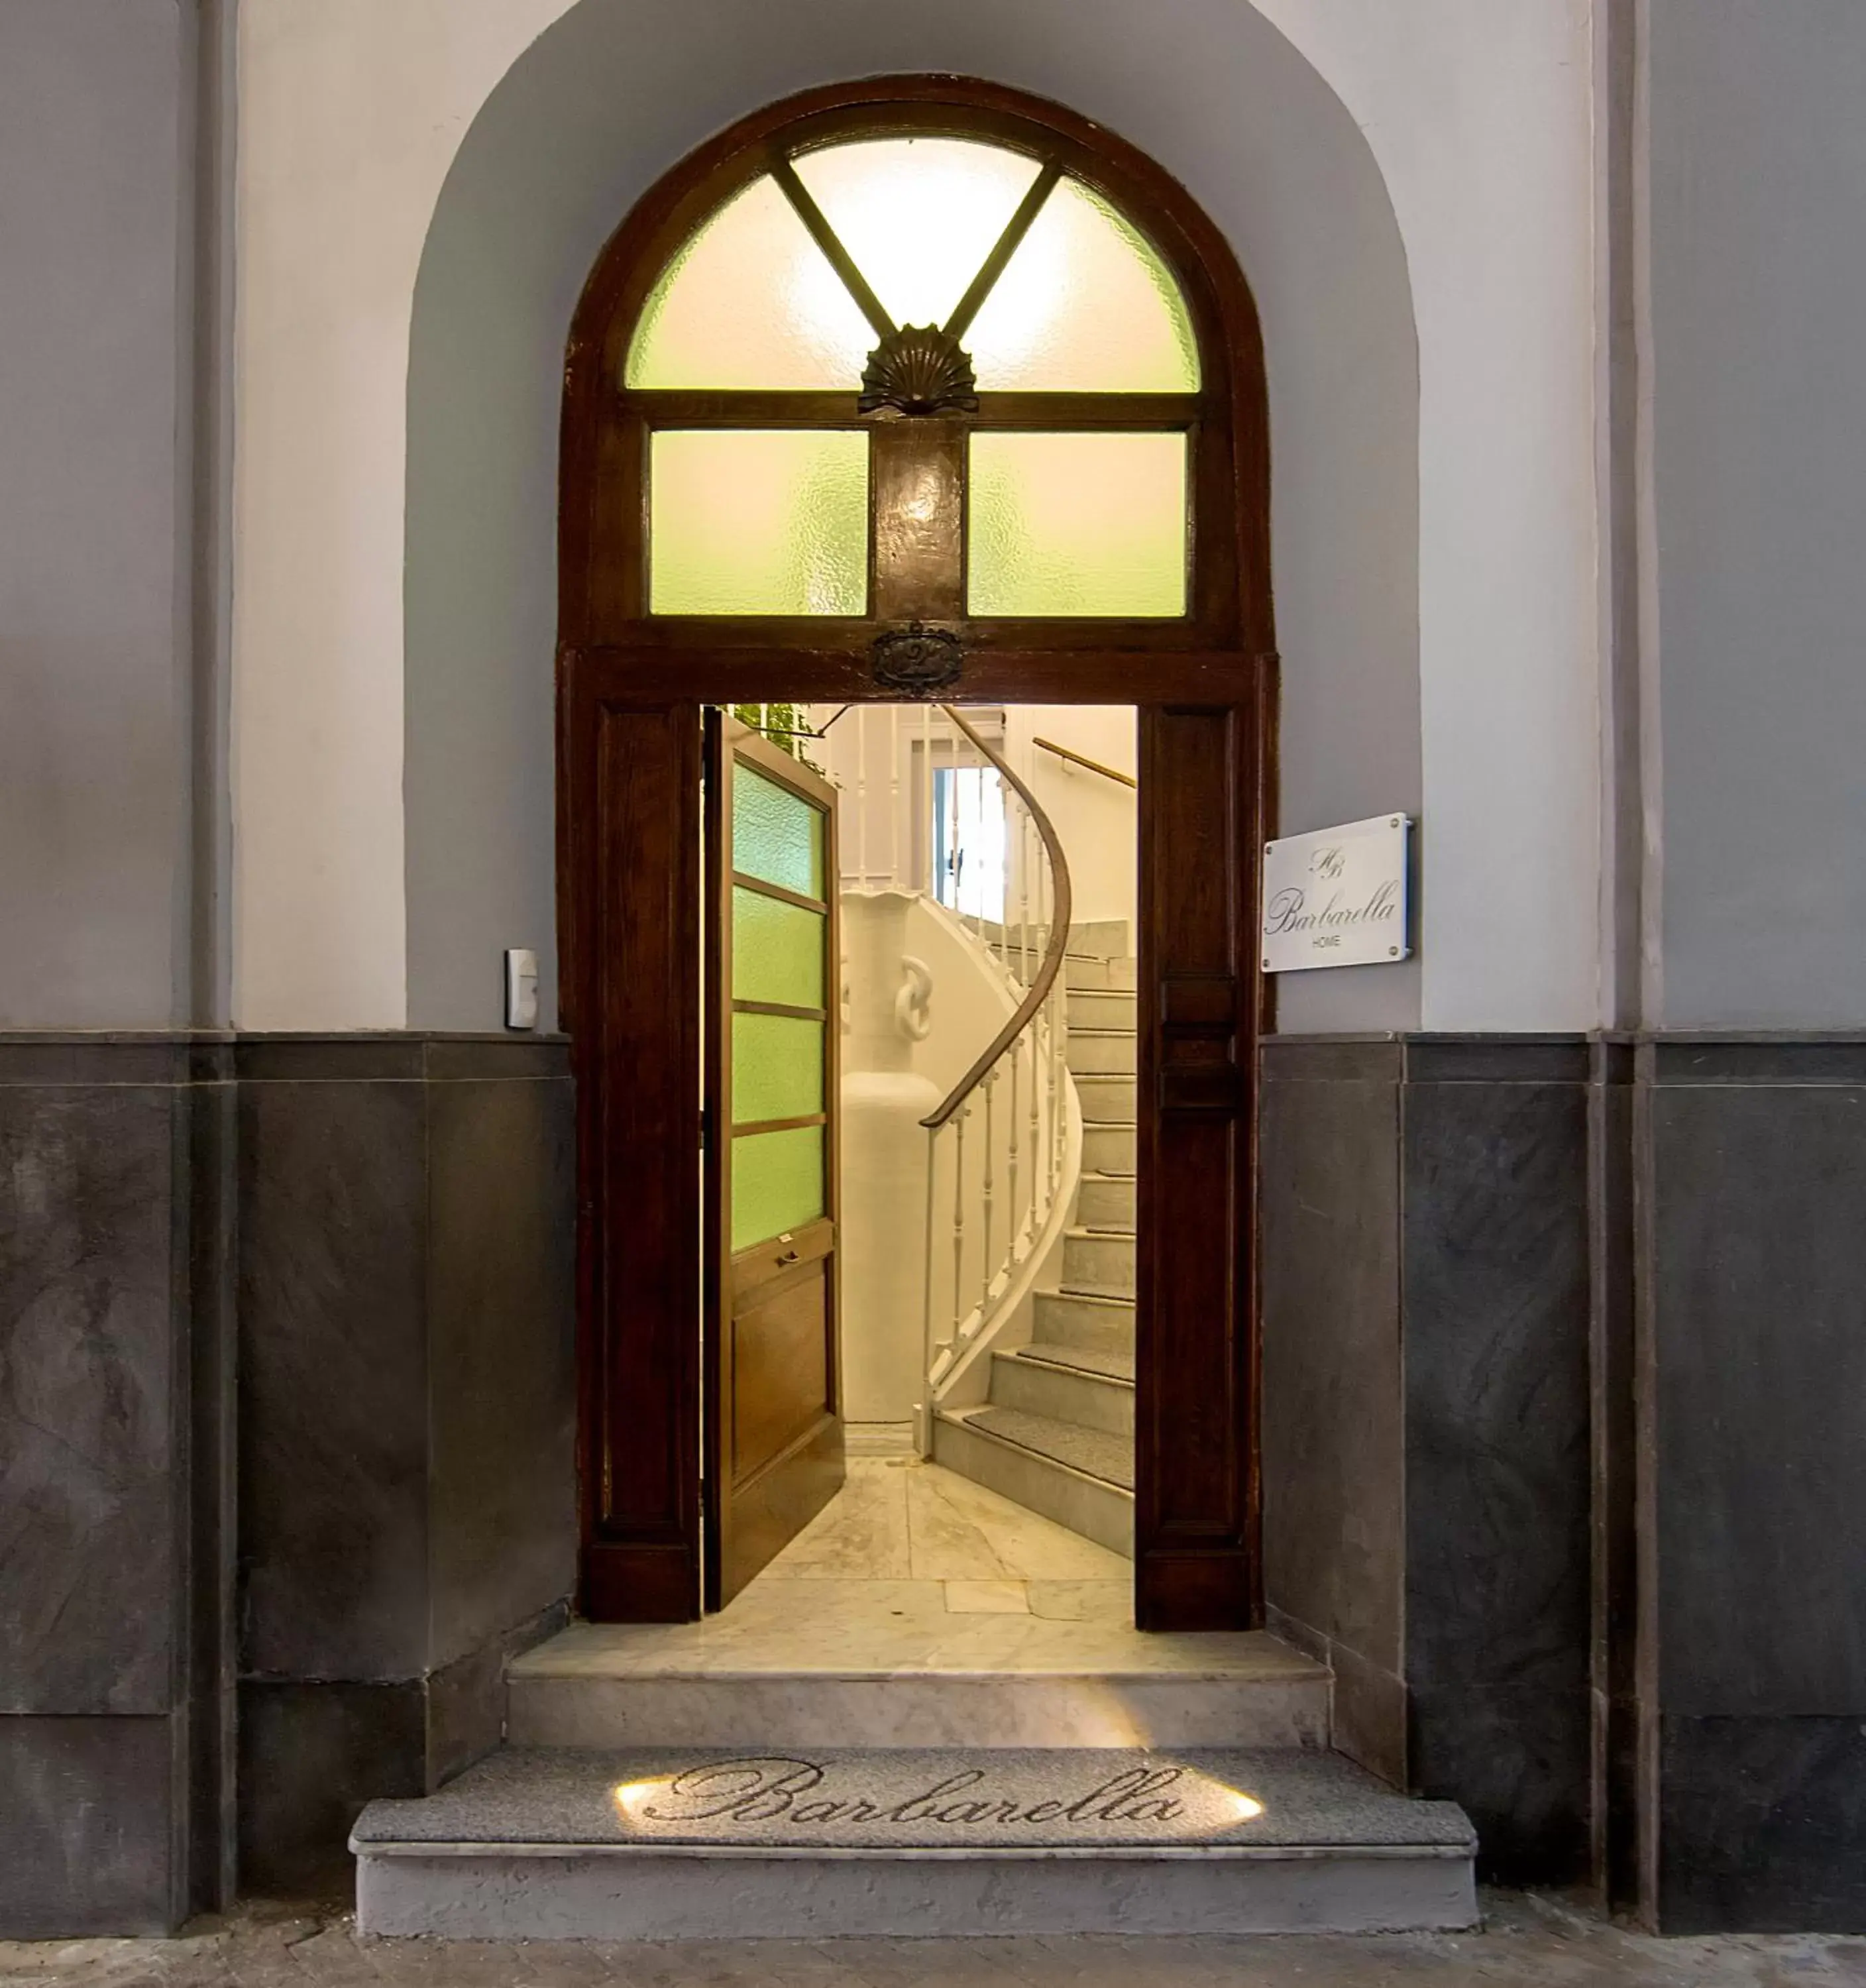 Facade/Entrance in Barbarella Home